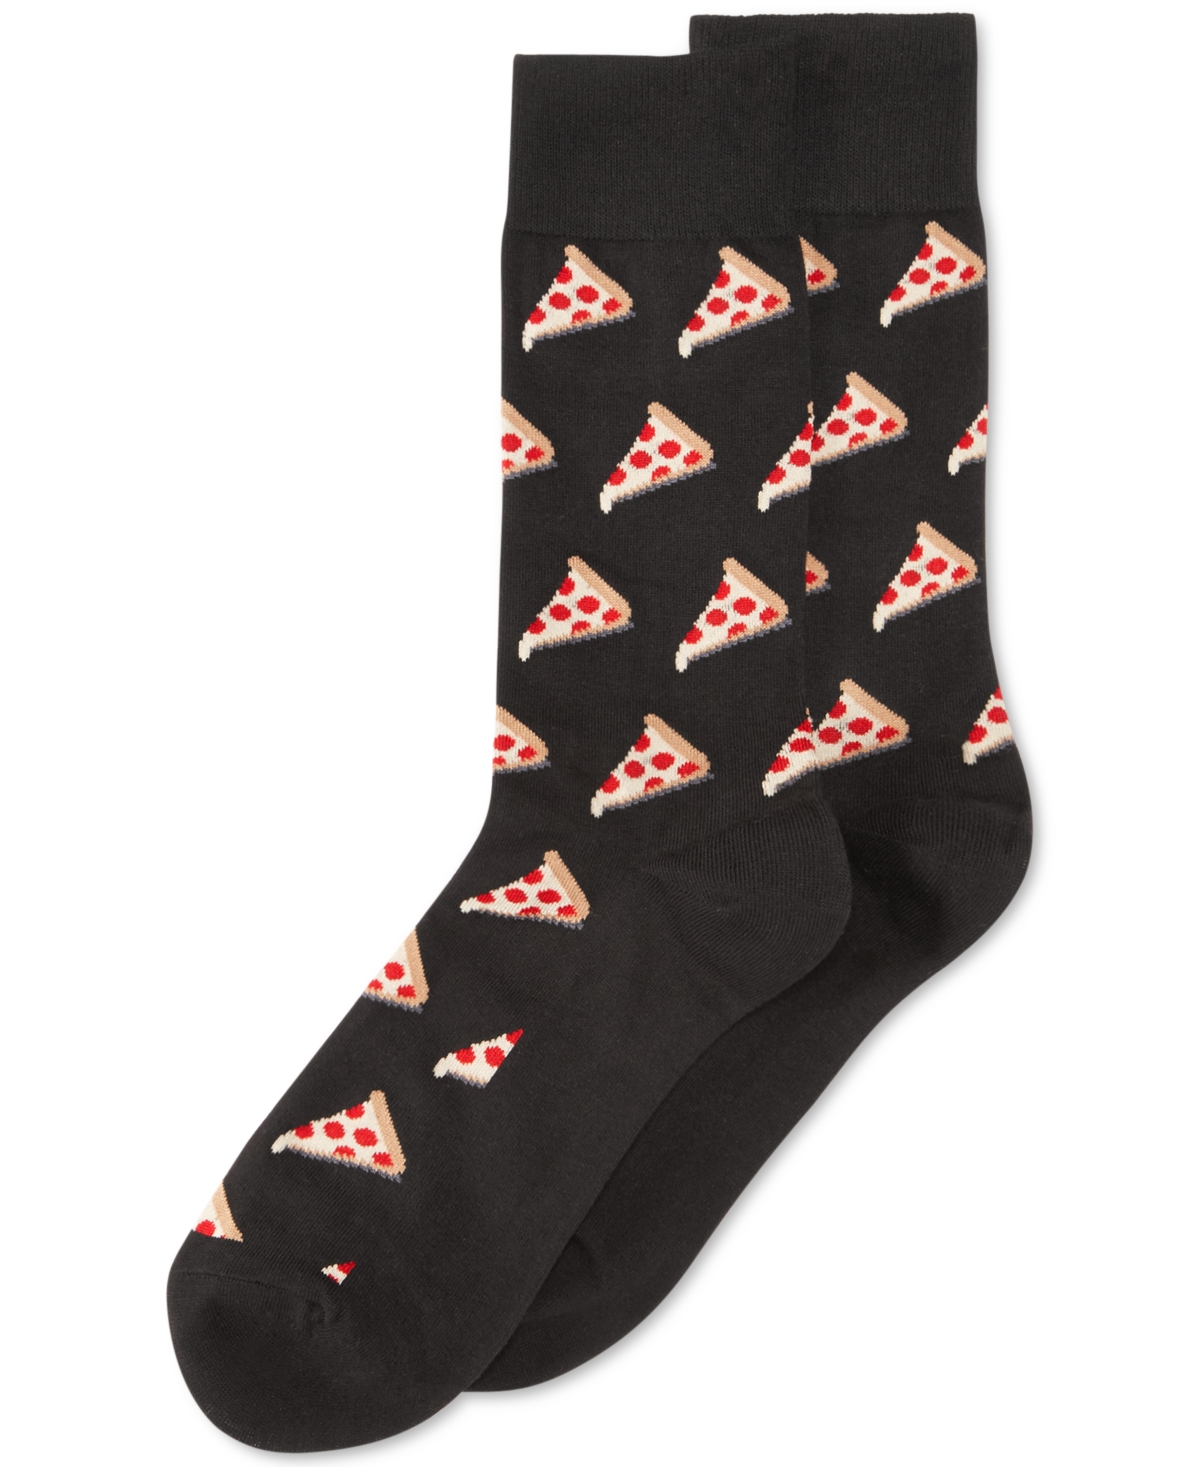 Hot Sox Men's Socks, Pizza Crew